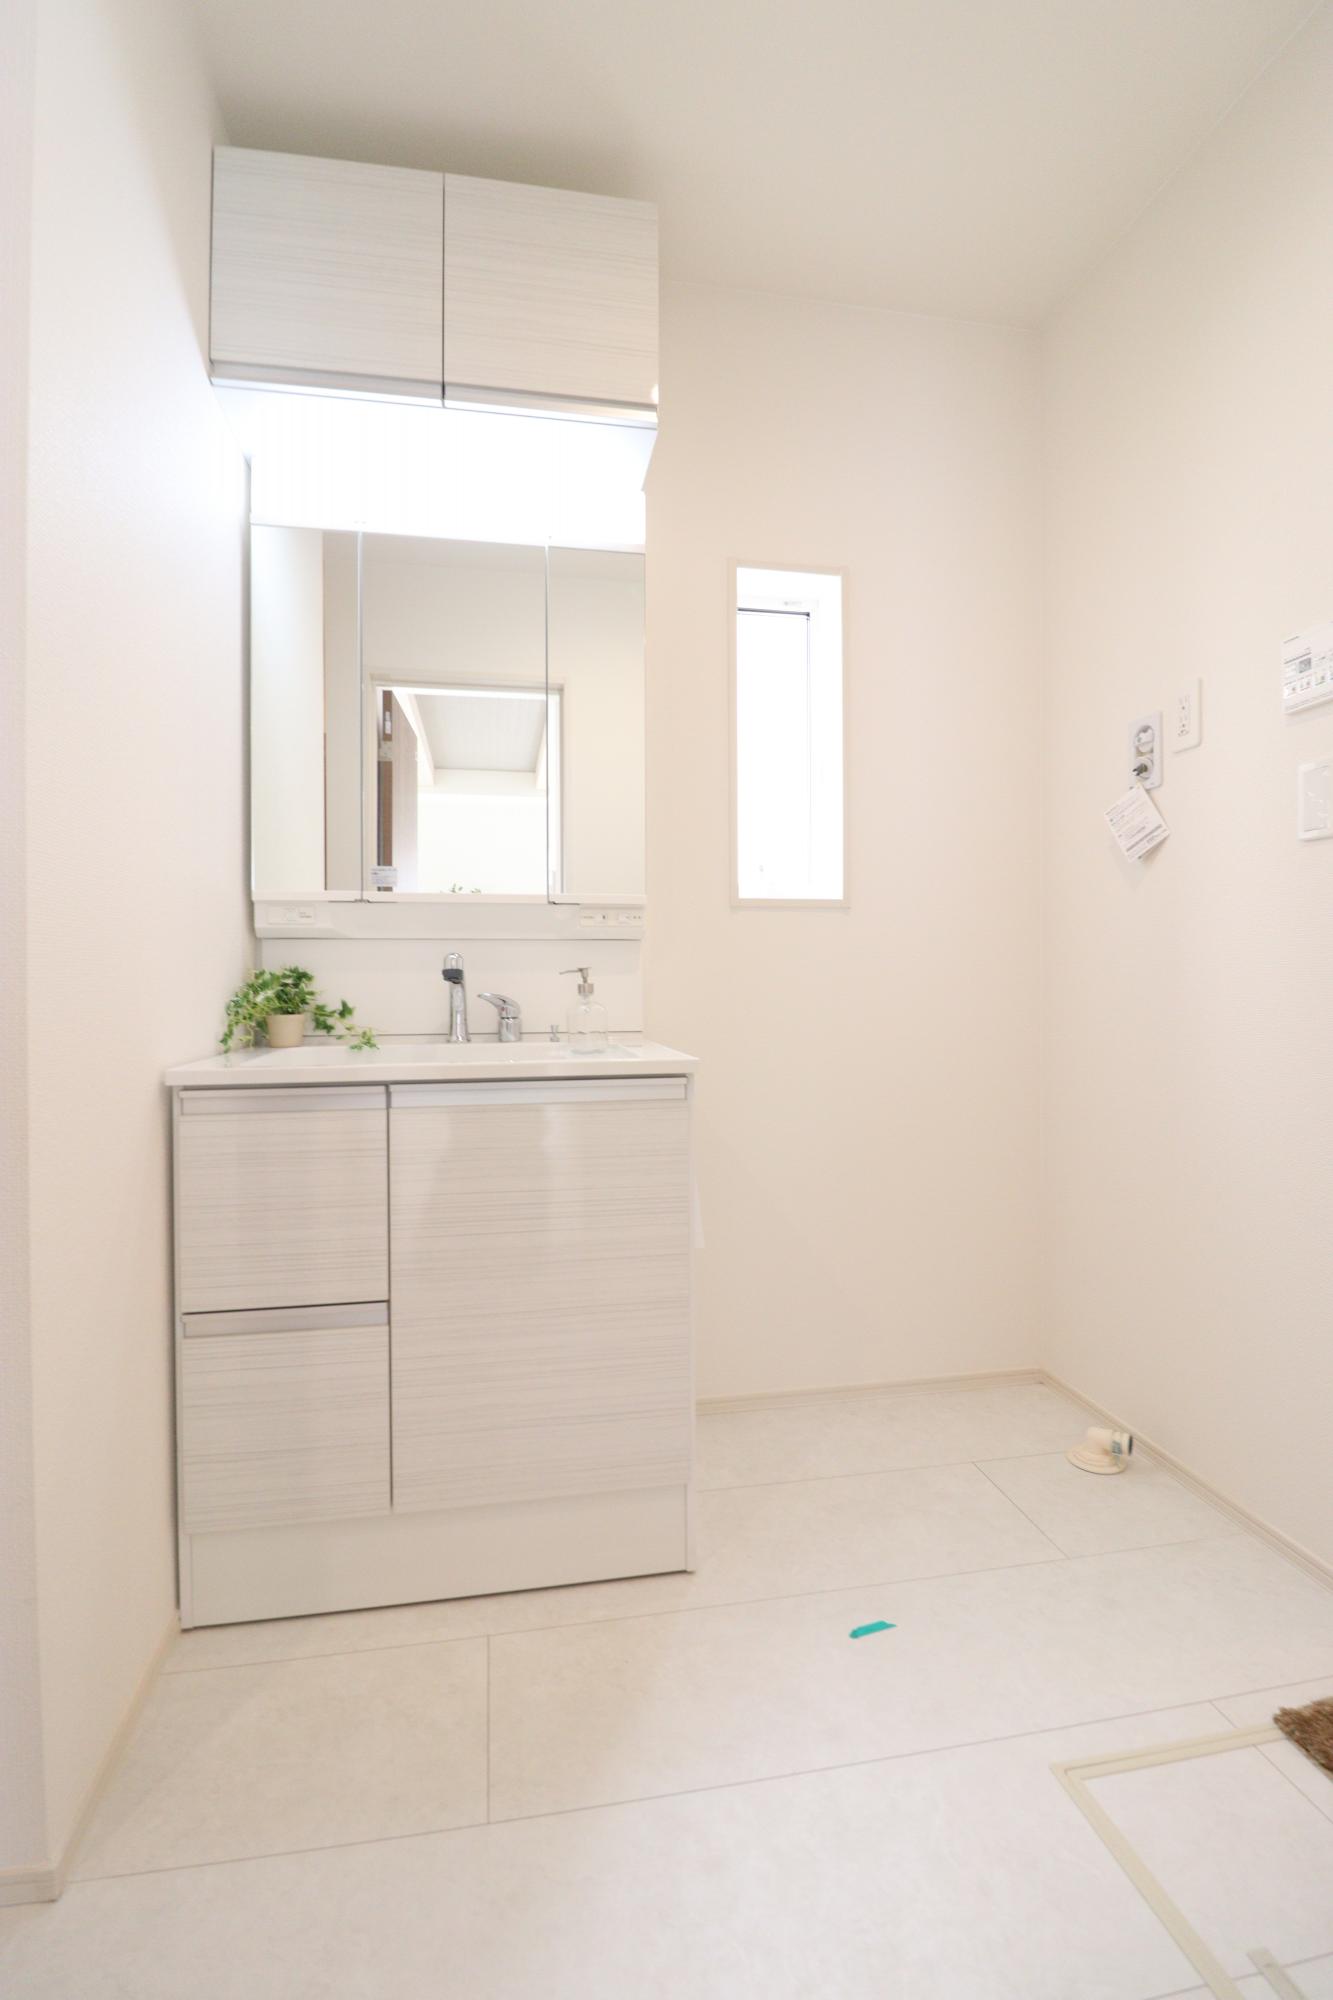 【洗面化粧台】収納力と機能性に優れたシャワー付き洗面化粧台! 鏡の内側にも収納スペースがあるので、細かいものも整理しやすいです。